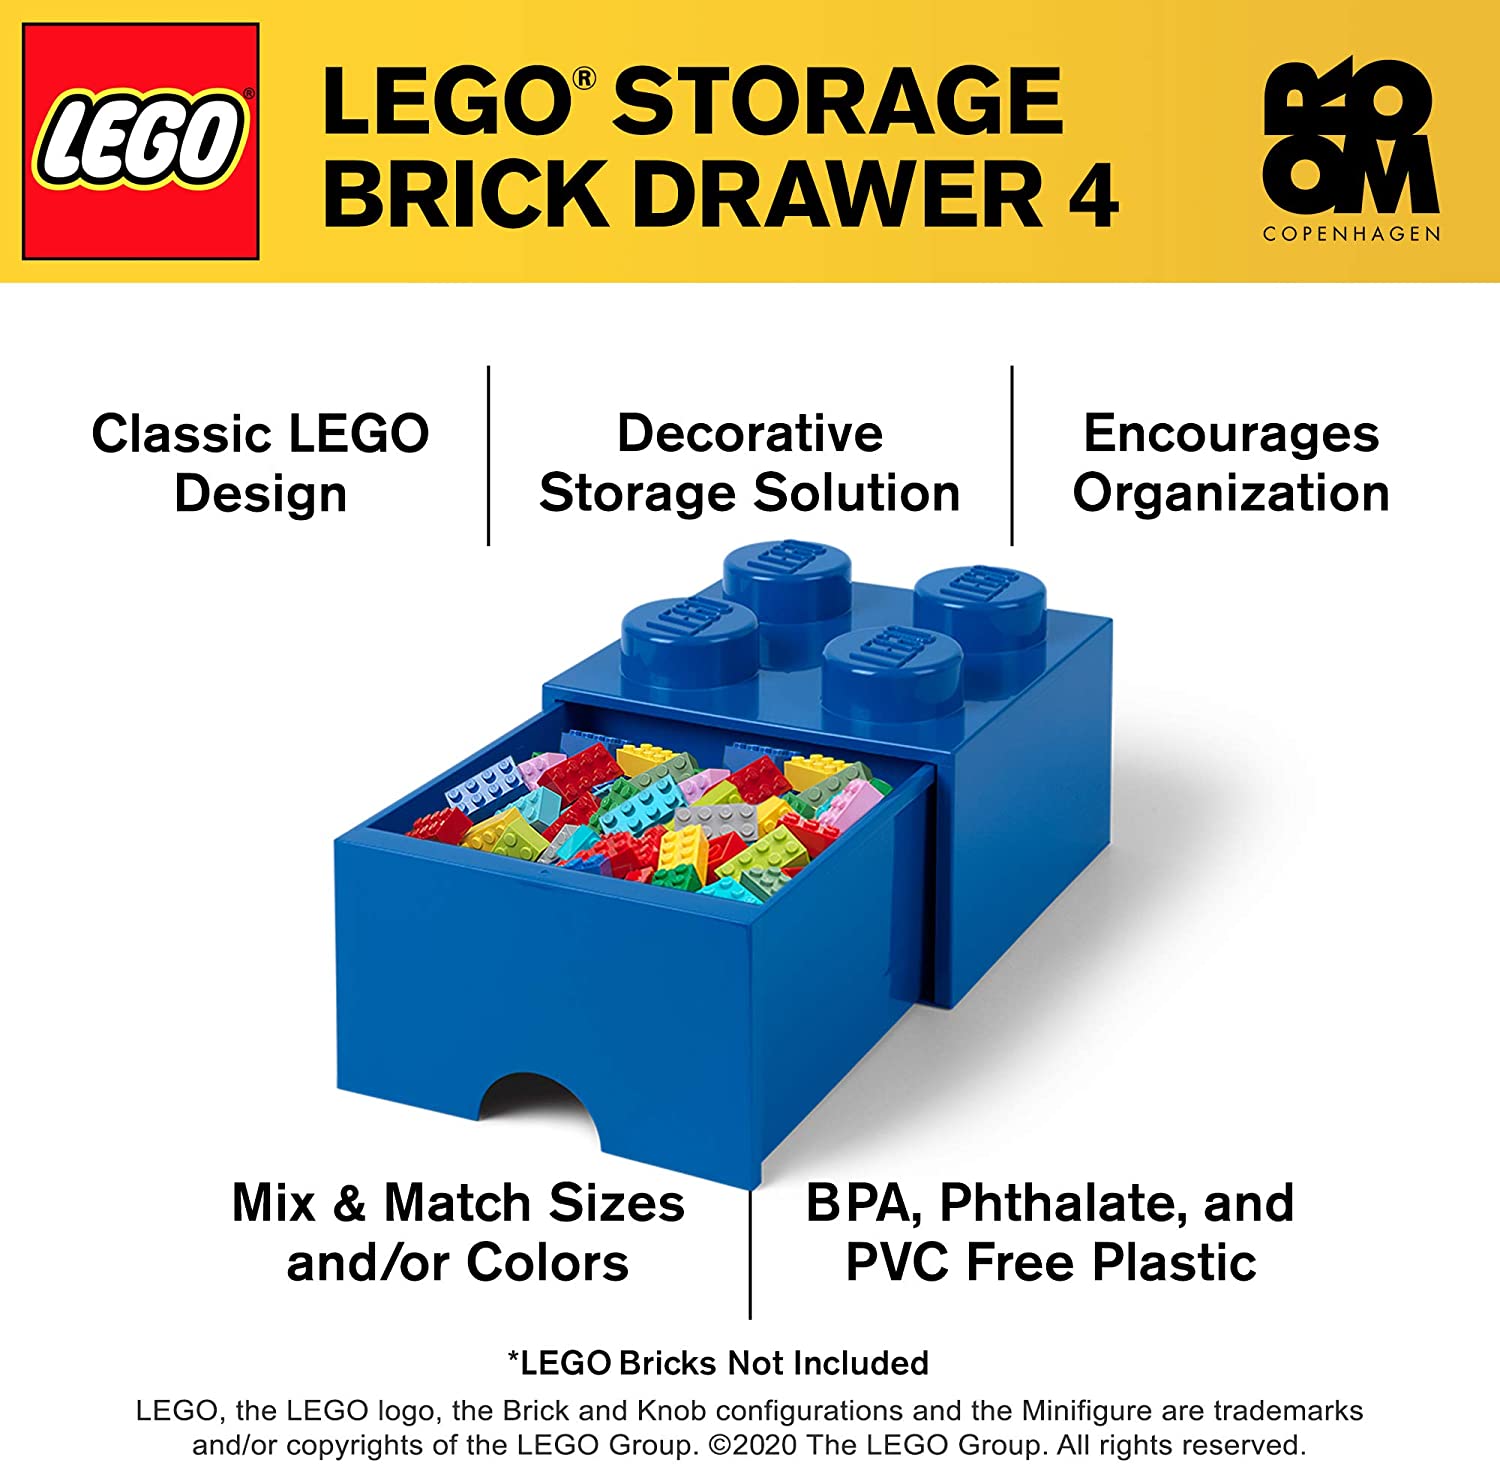 LEGO Cassettiera blu brillante